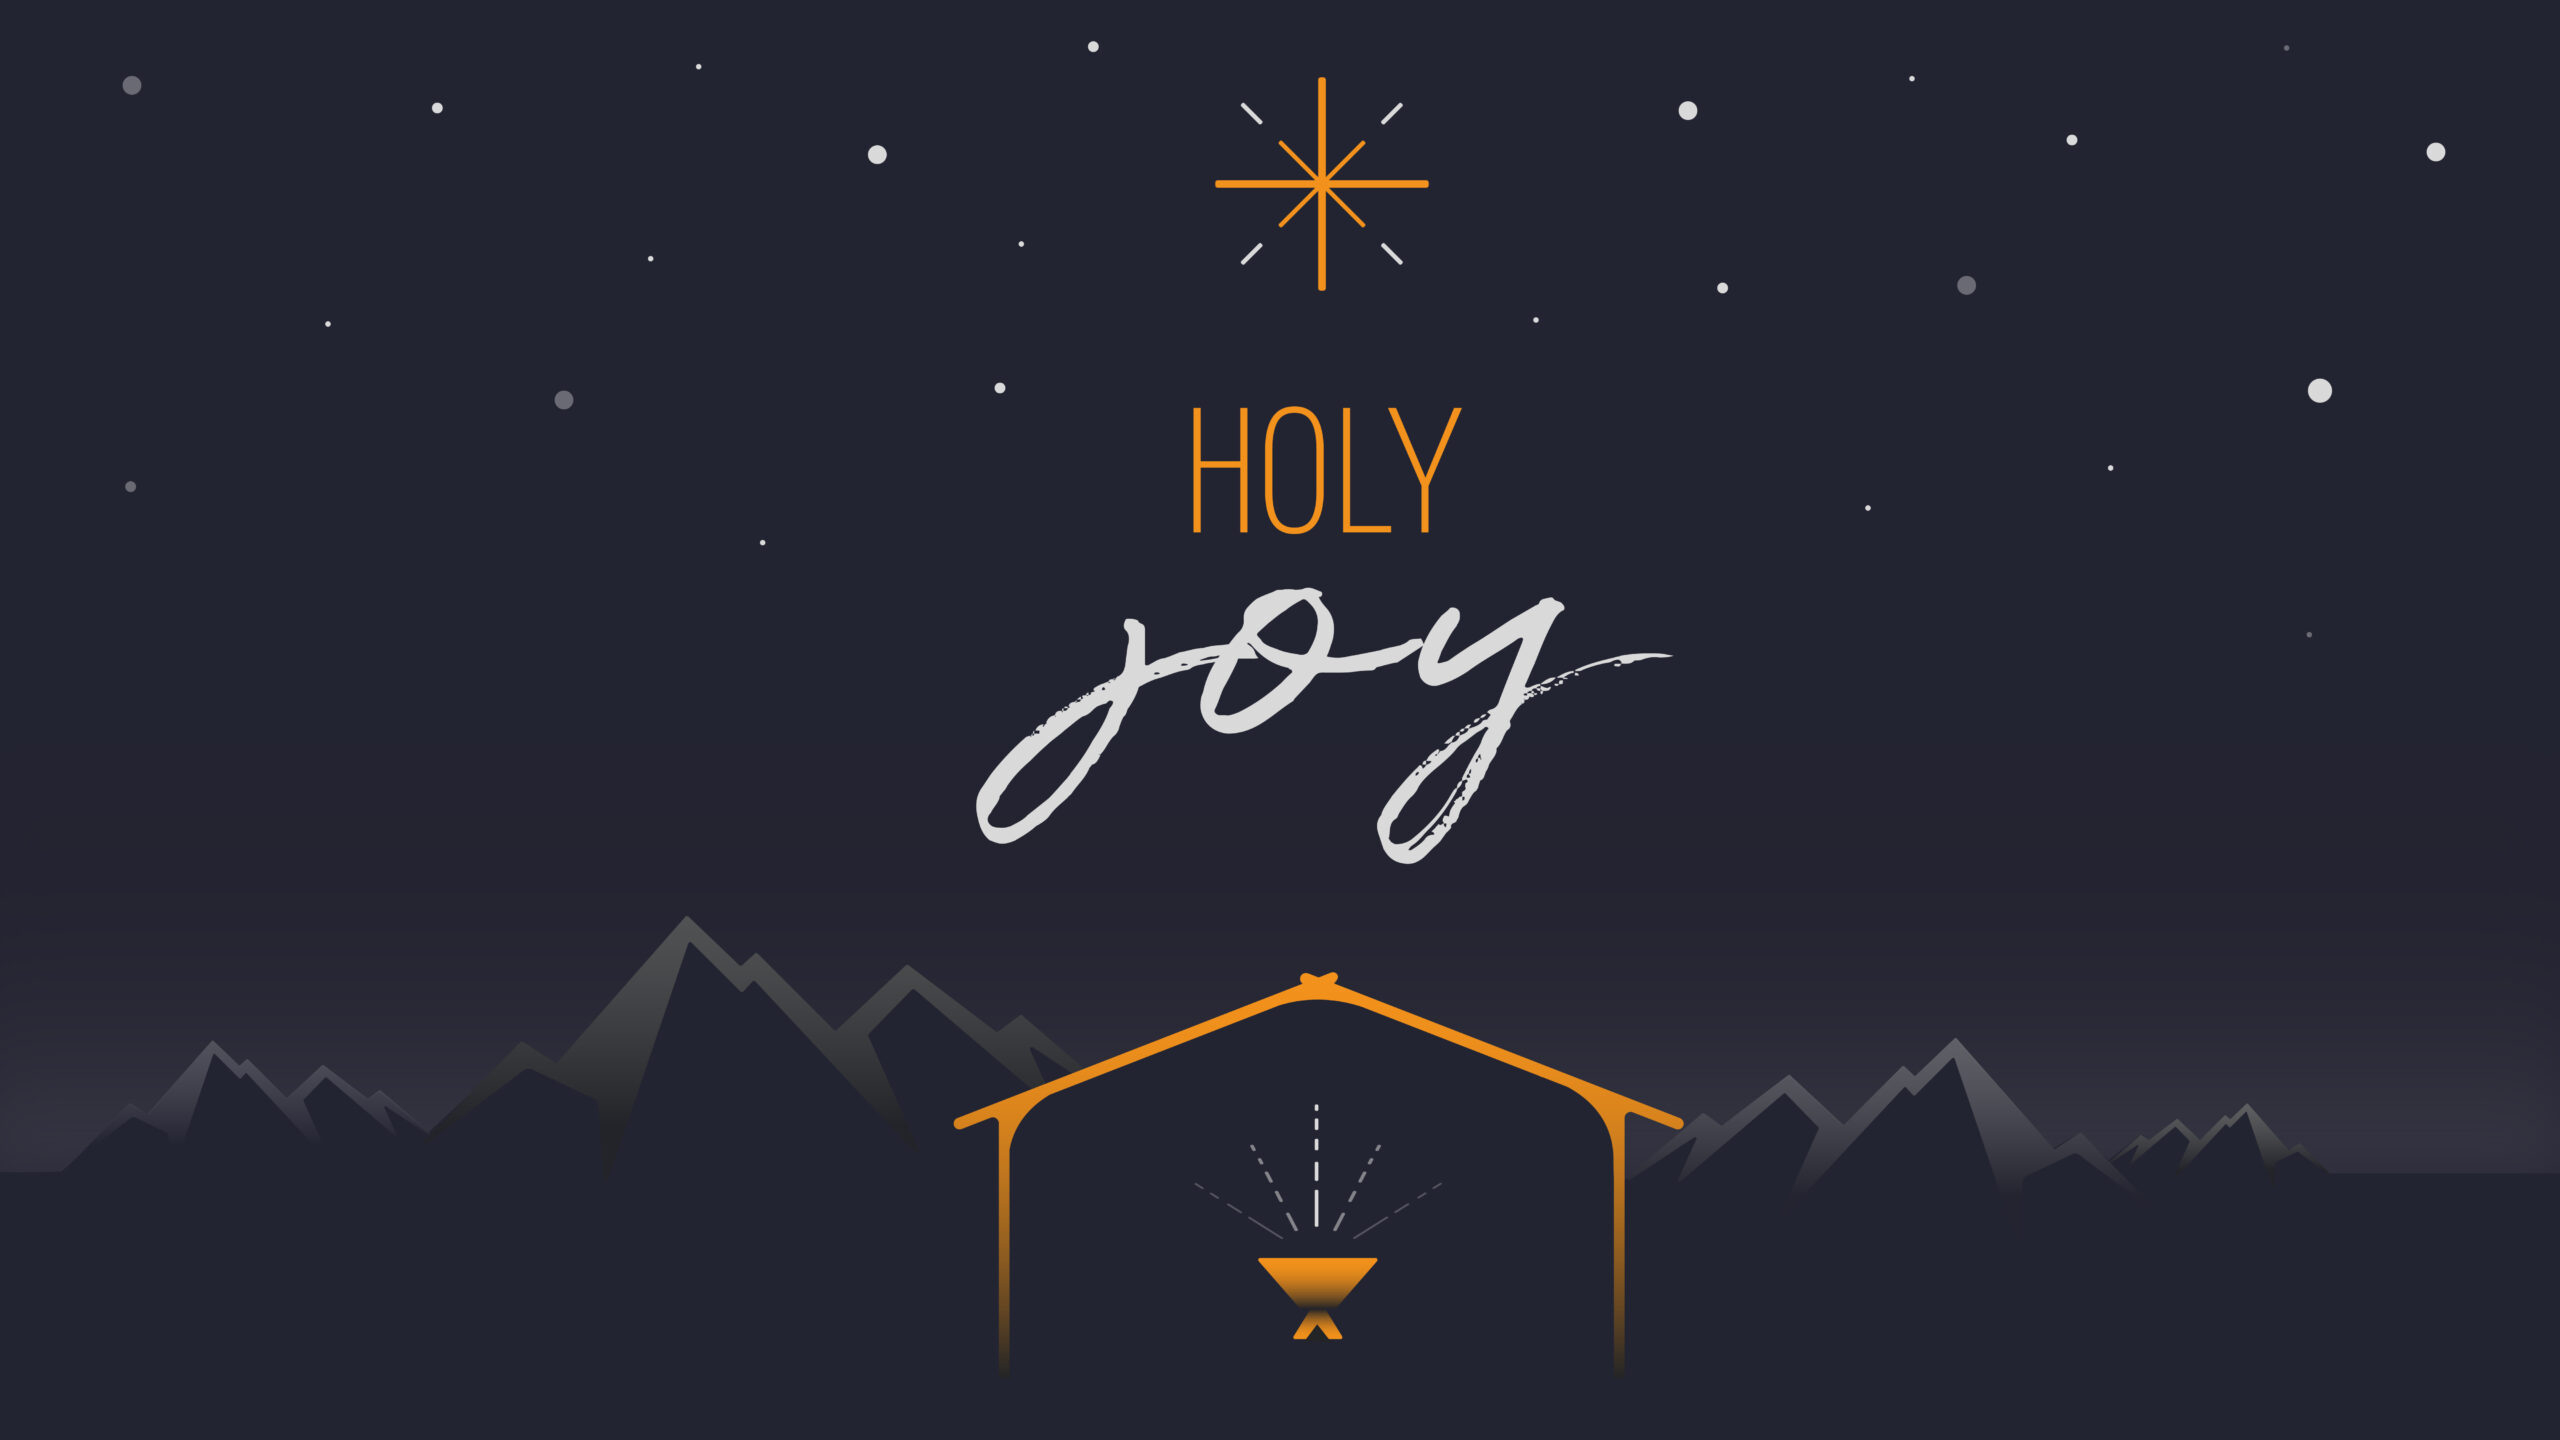 Part 4 – Holy Joy